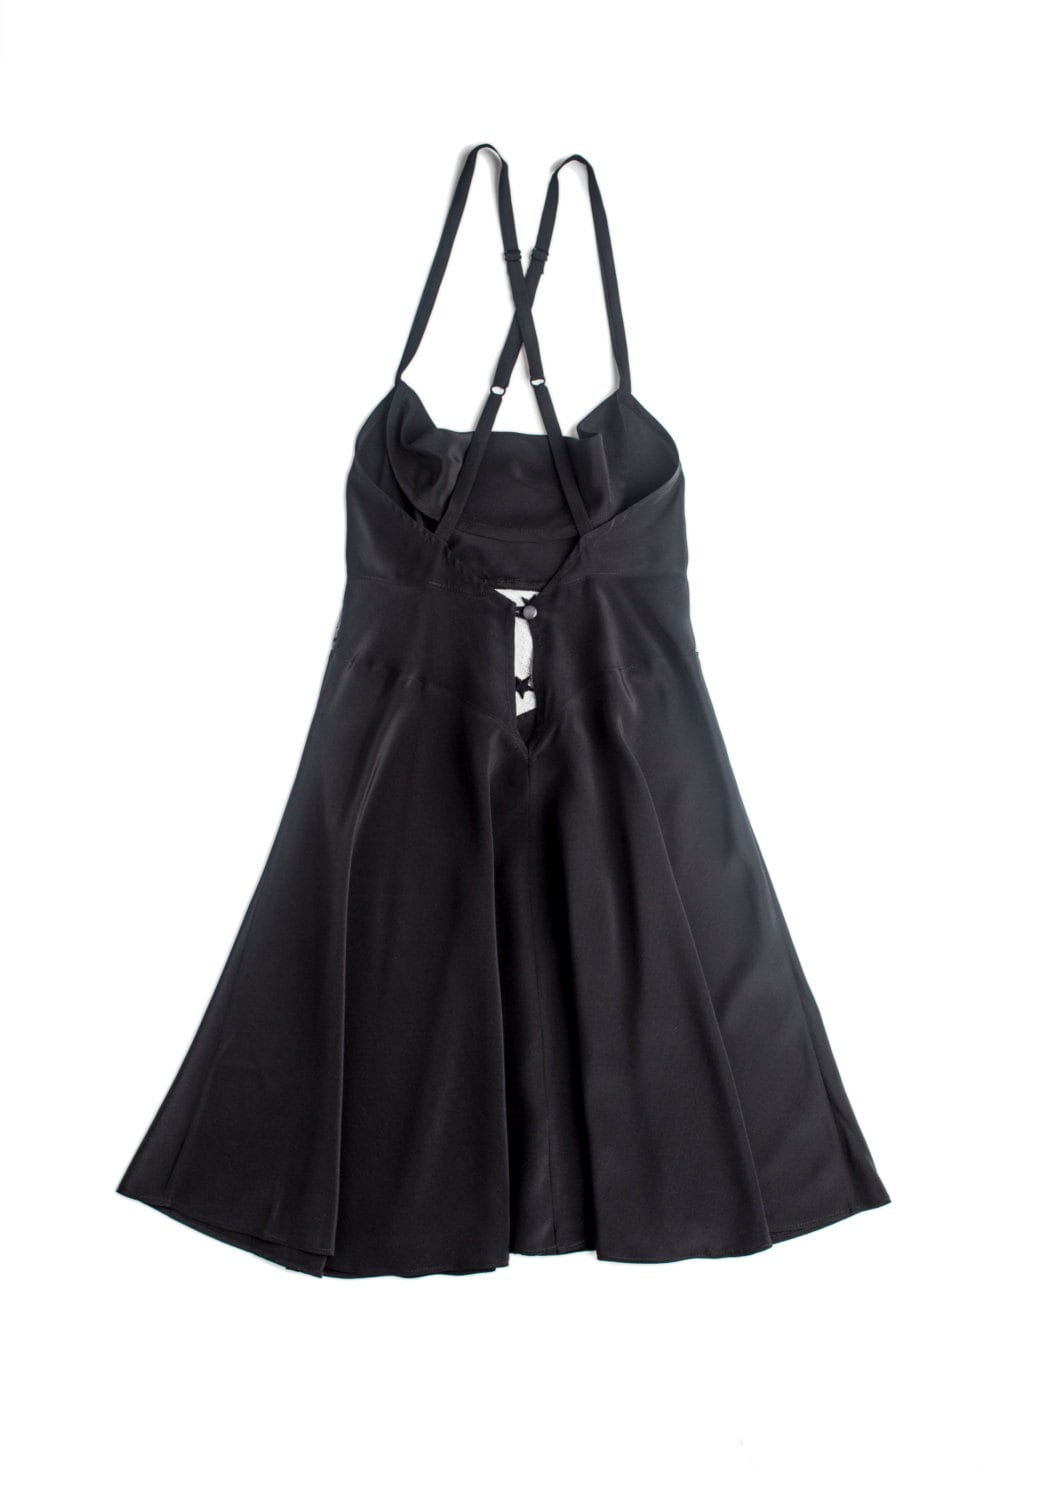 Silk Lingerie Black Dress Chemise Star / JANUS Short Gown | Etsy